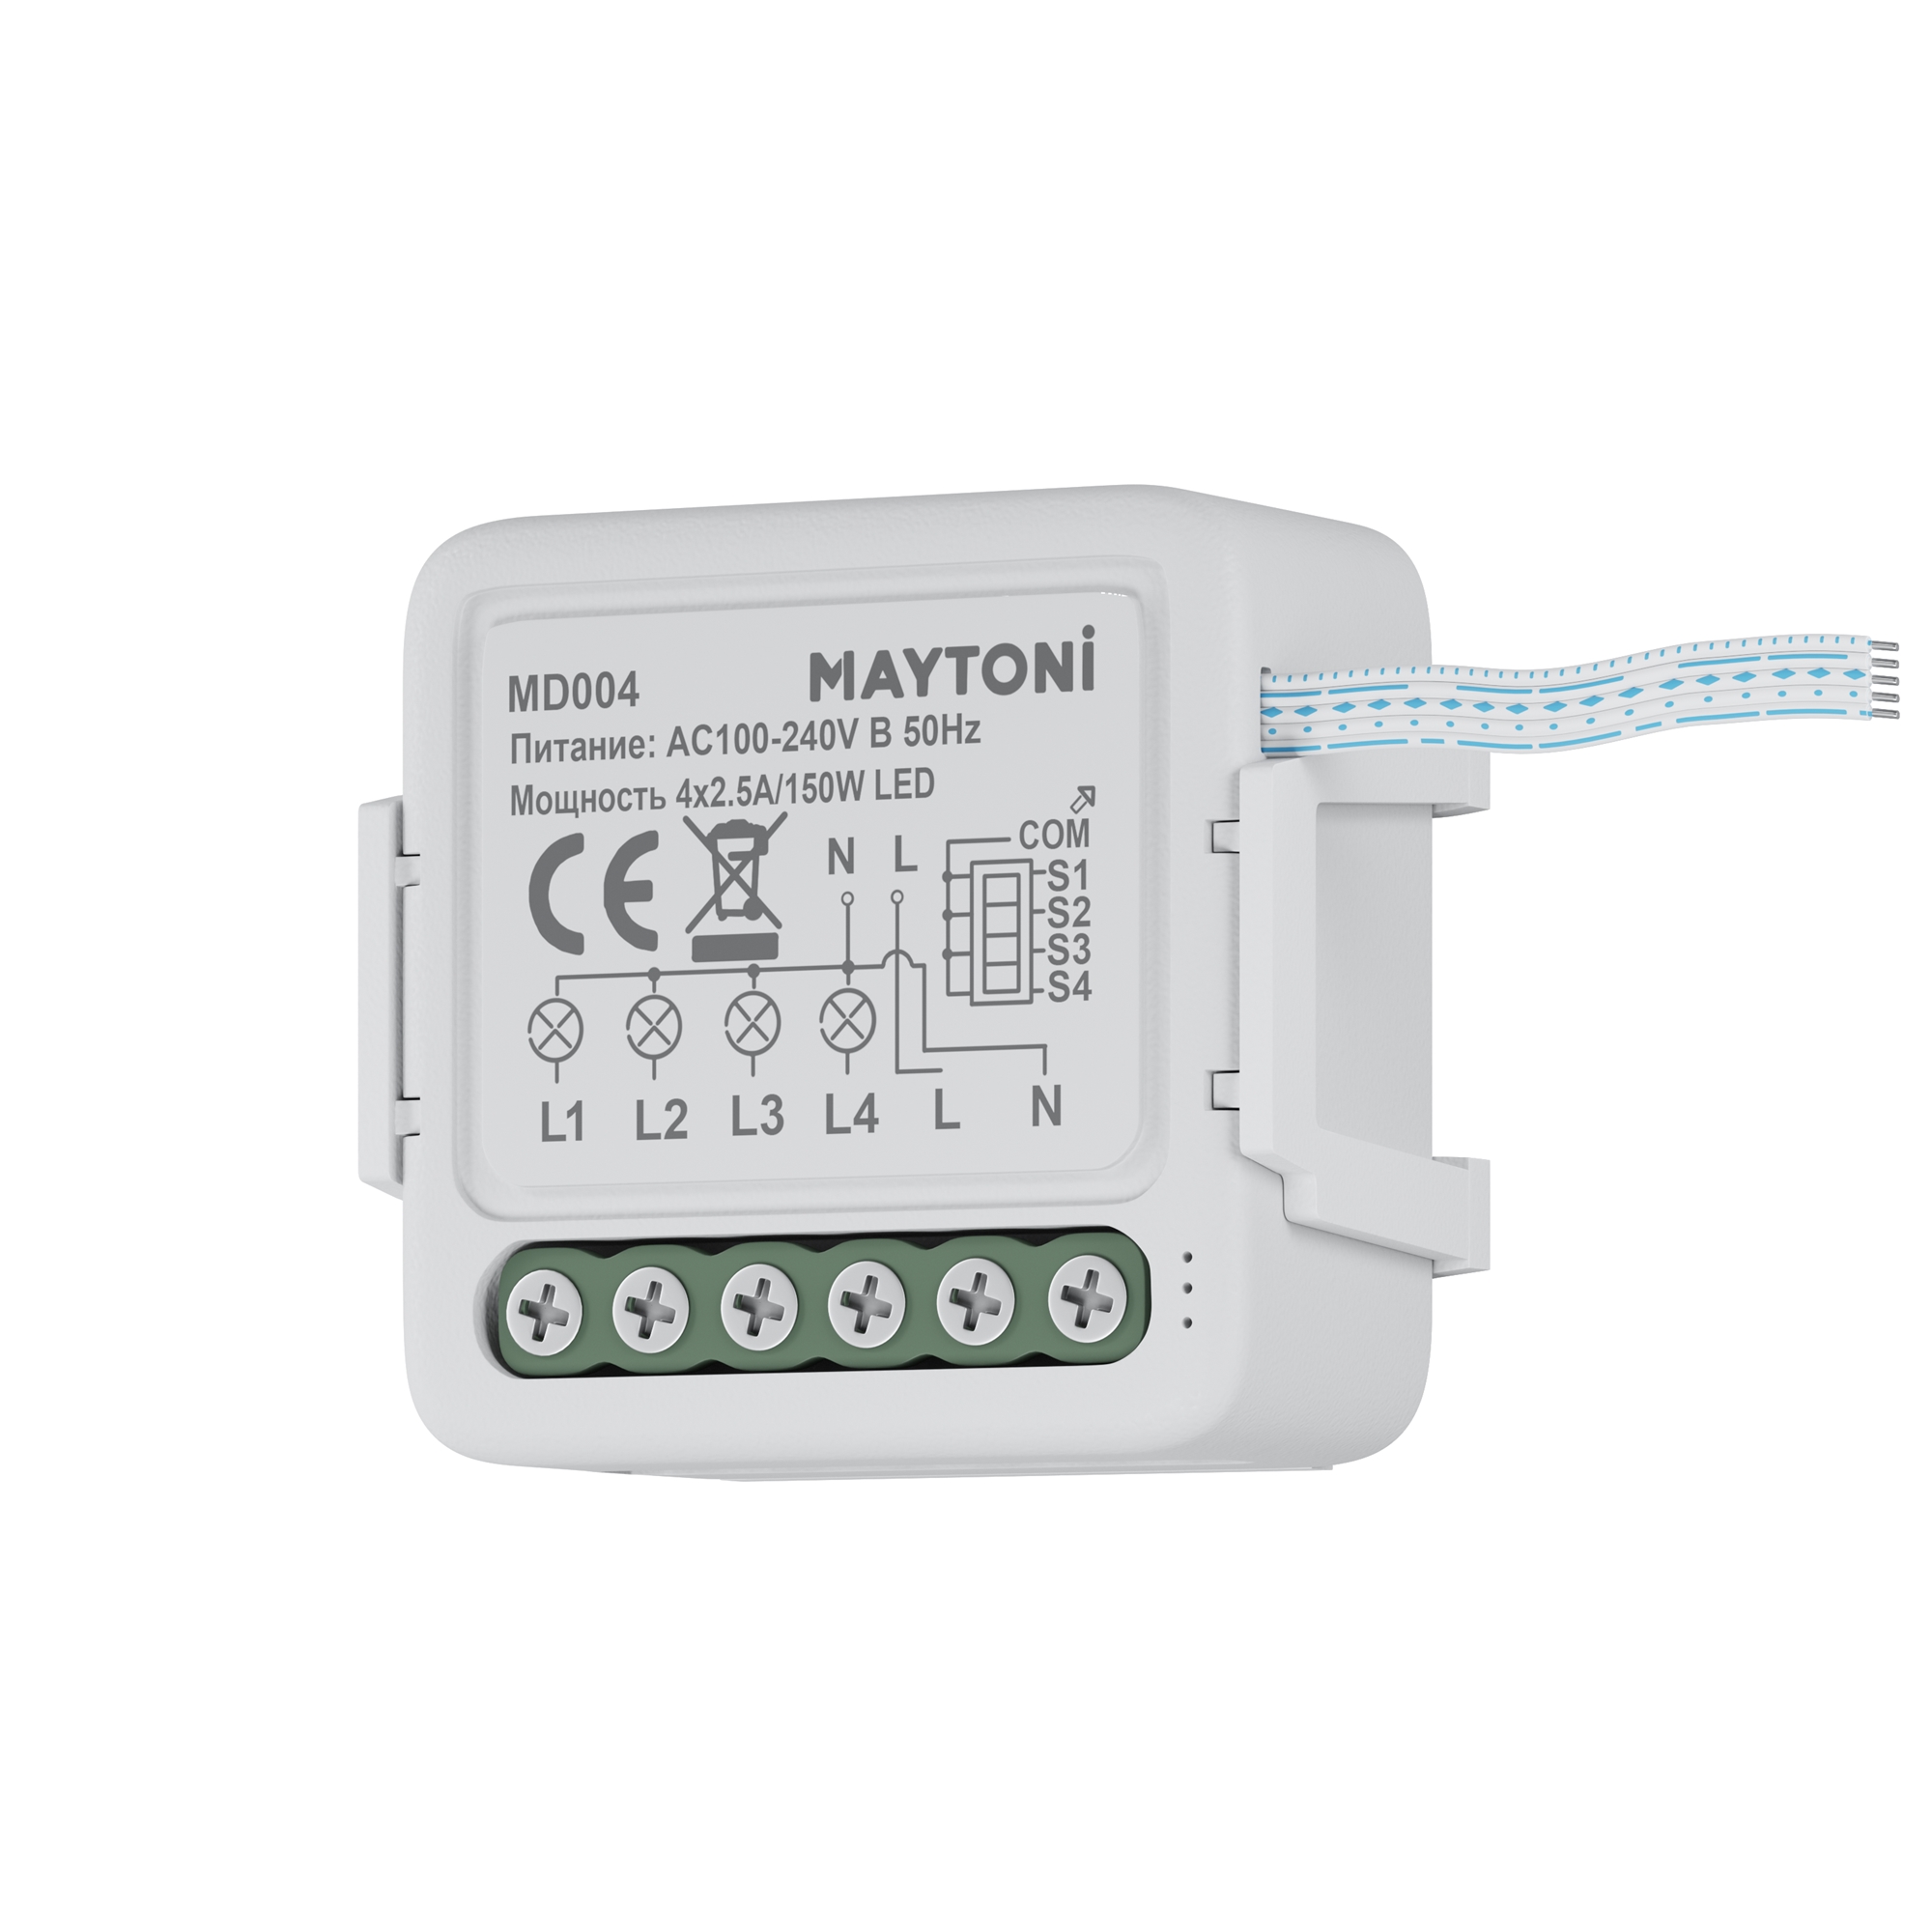 W-Fi   Smart home Maytoni MD004